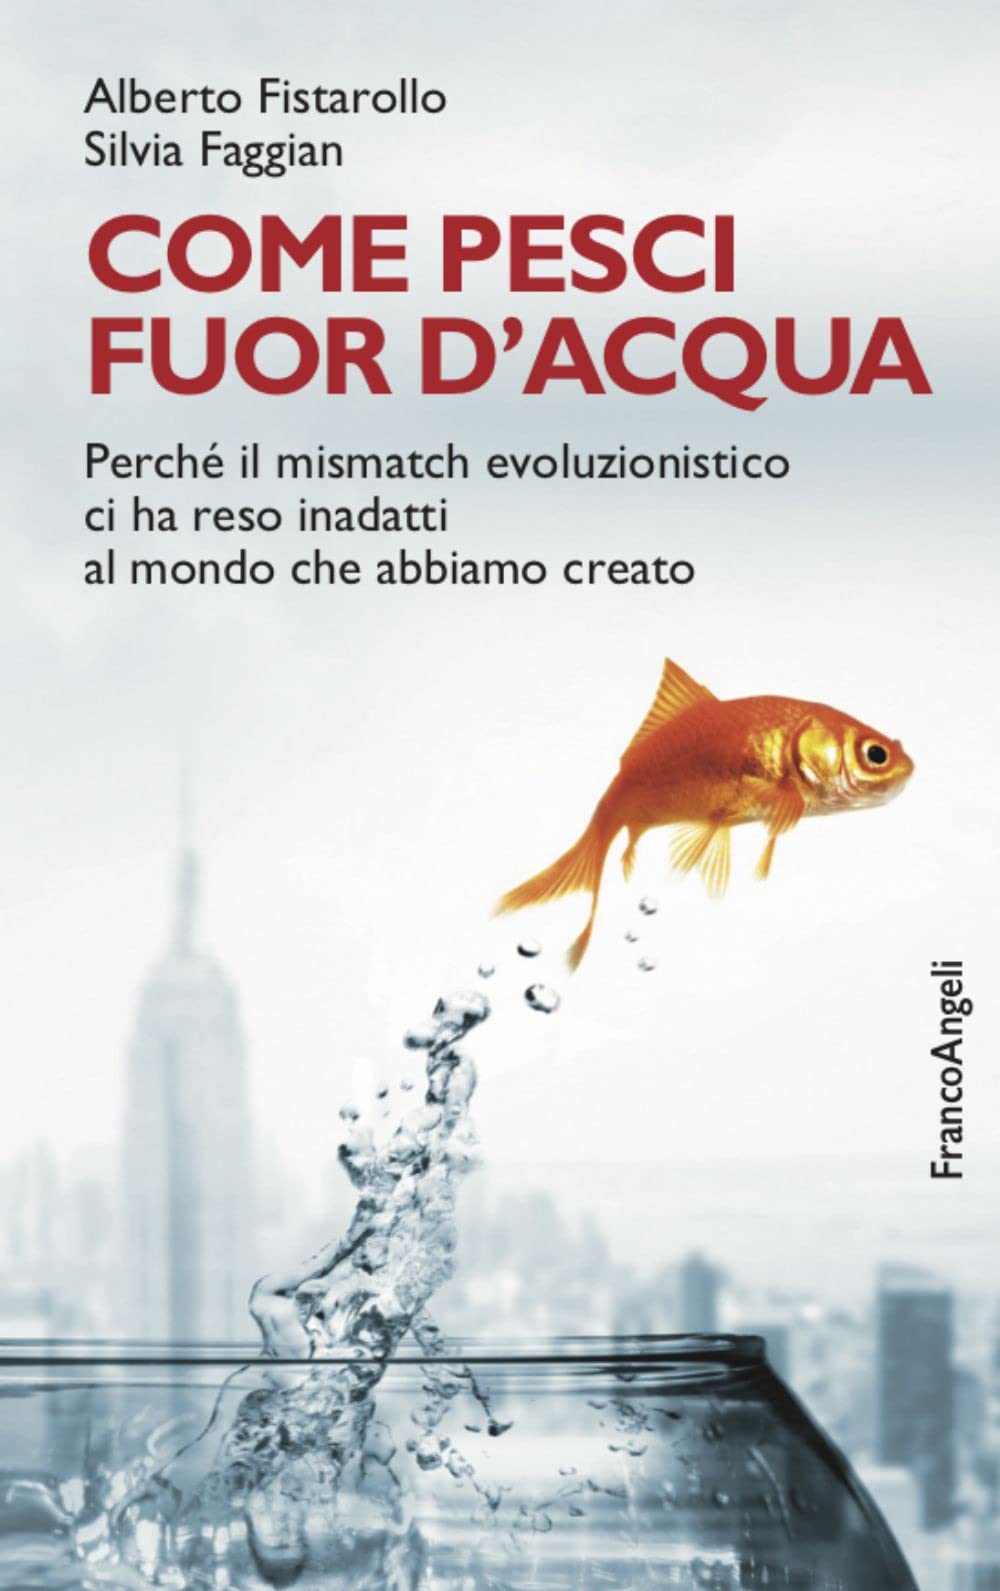 Come pesci fuor d’acqua di Faggian e Fistarollo (2022) – Recensione